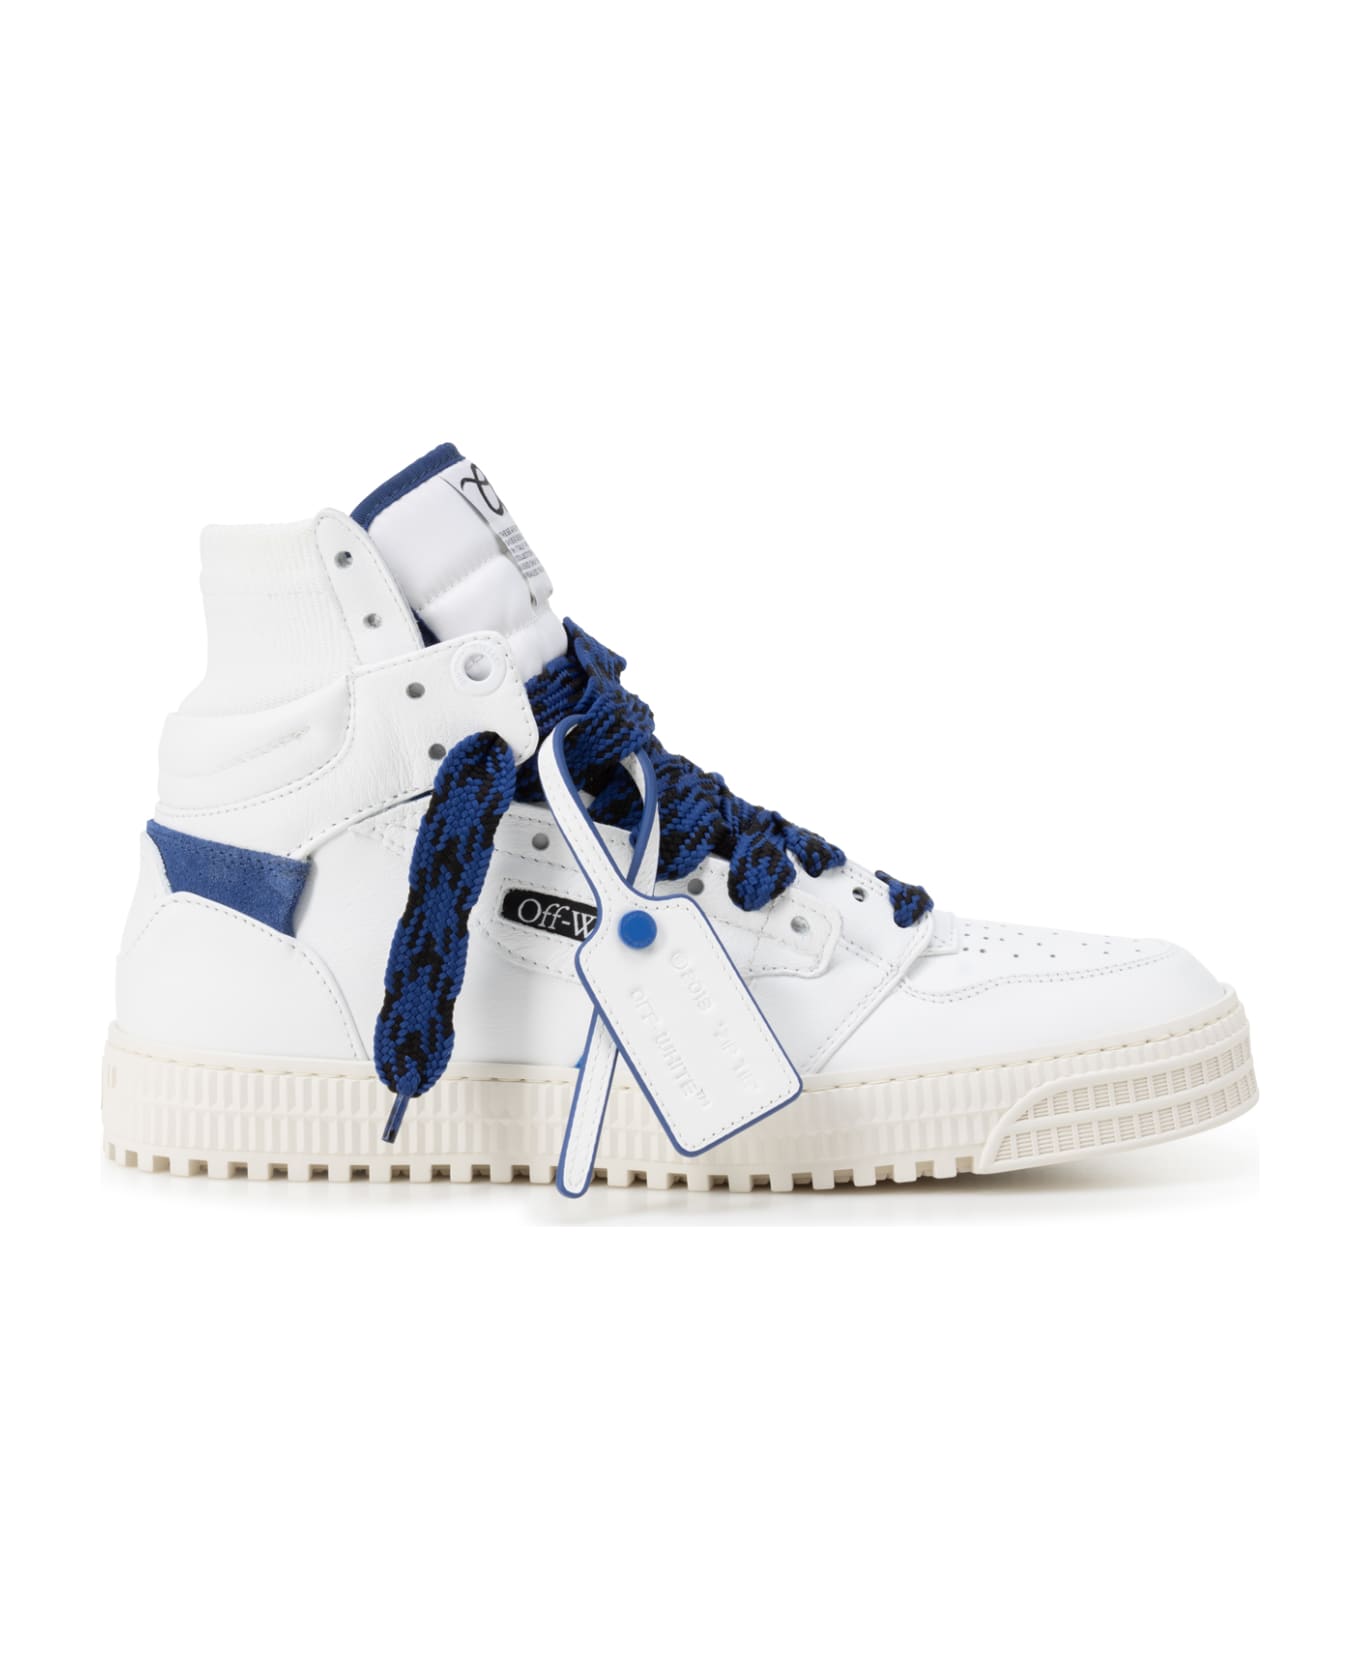 Off-White Sneakers - White/navy スニーカー